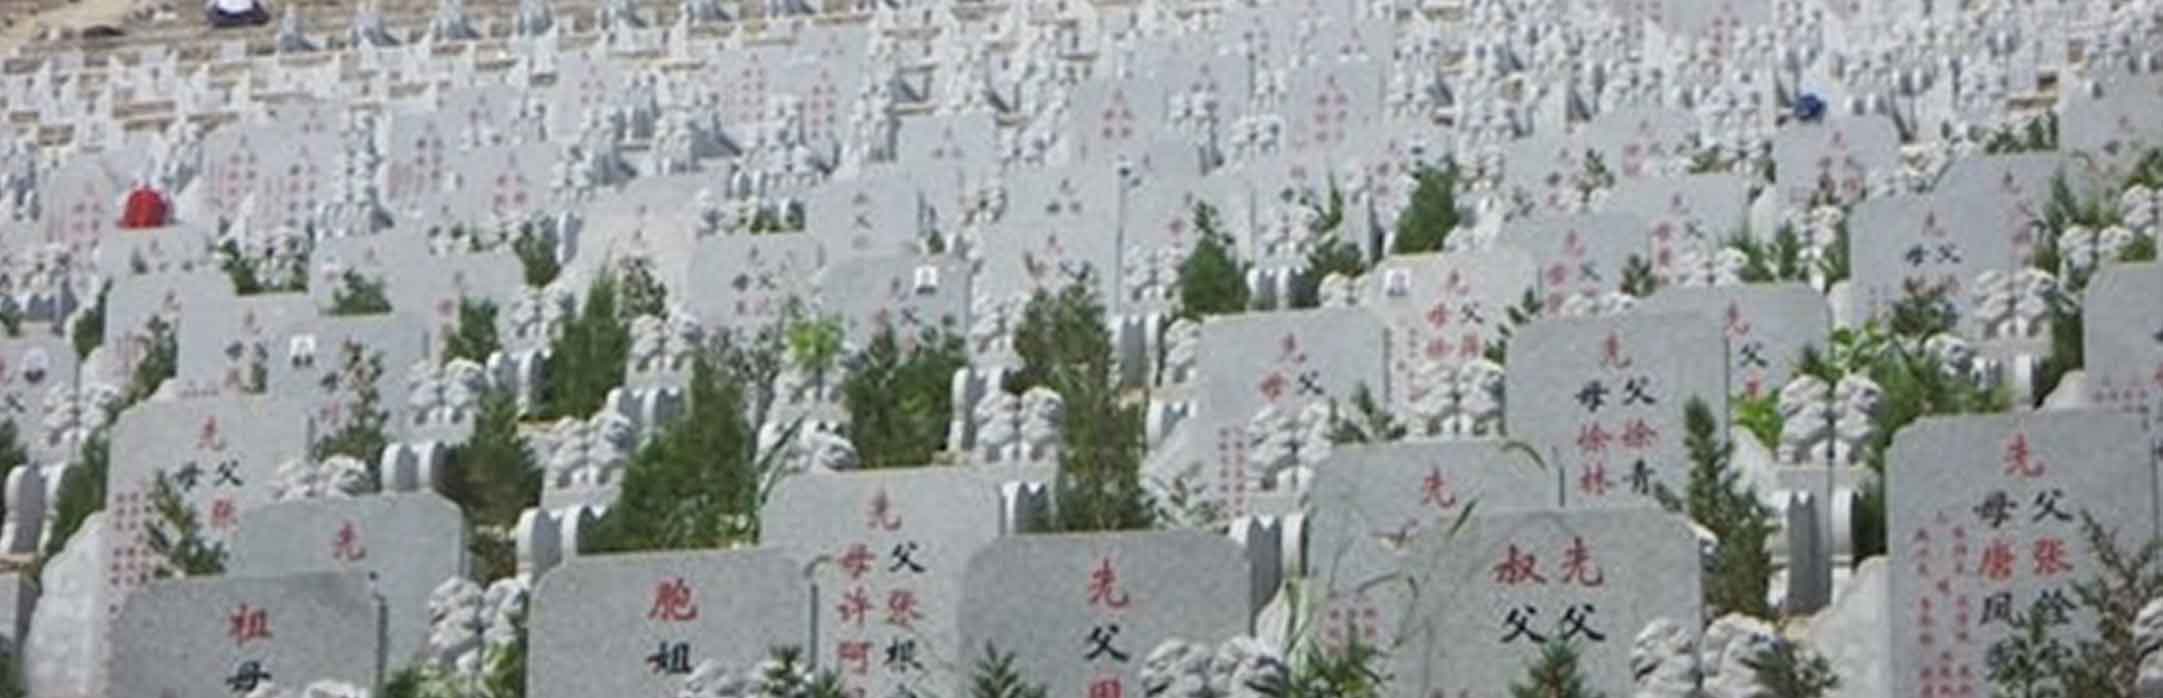 江阴花山公墓